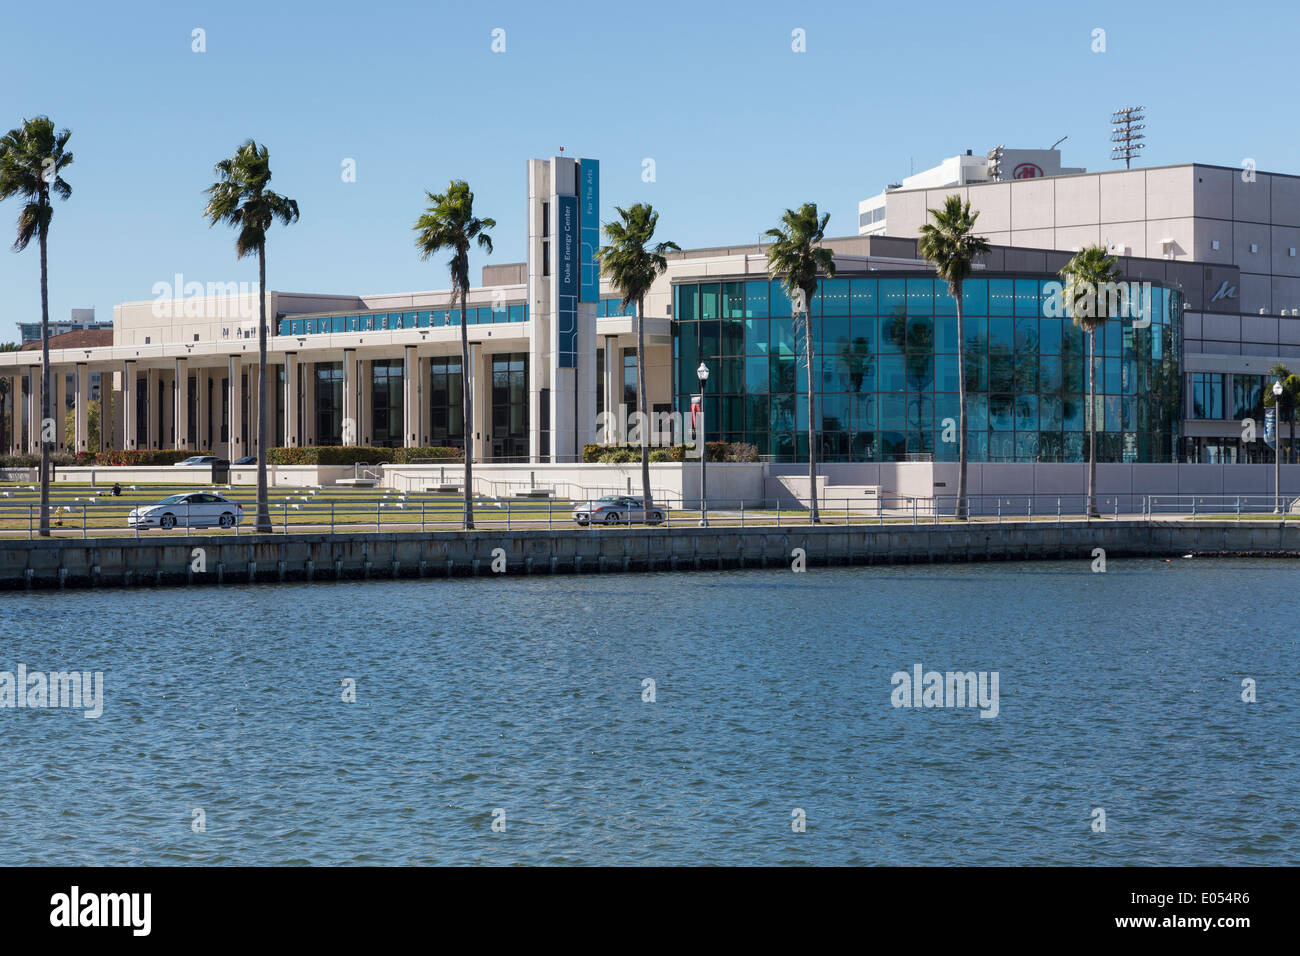 Progress Energy Center für darstellende Künste, Mahaffey Theater, St. Petersburg, FL Stockfoto